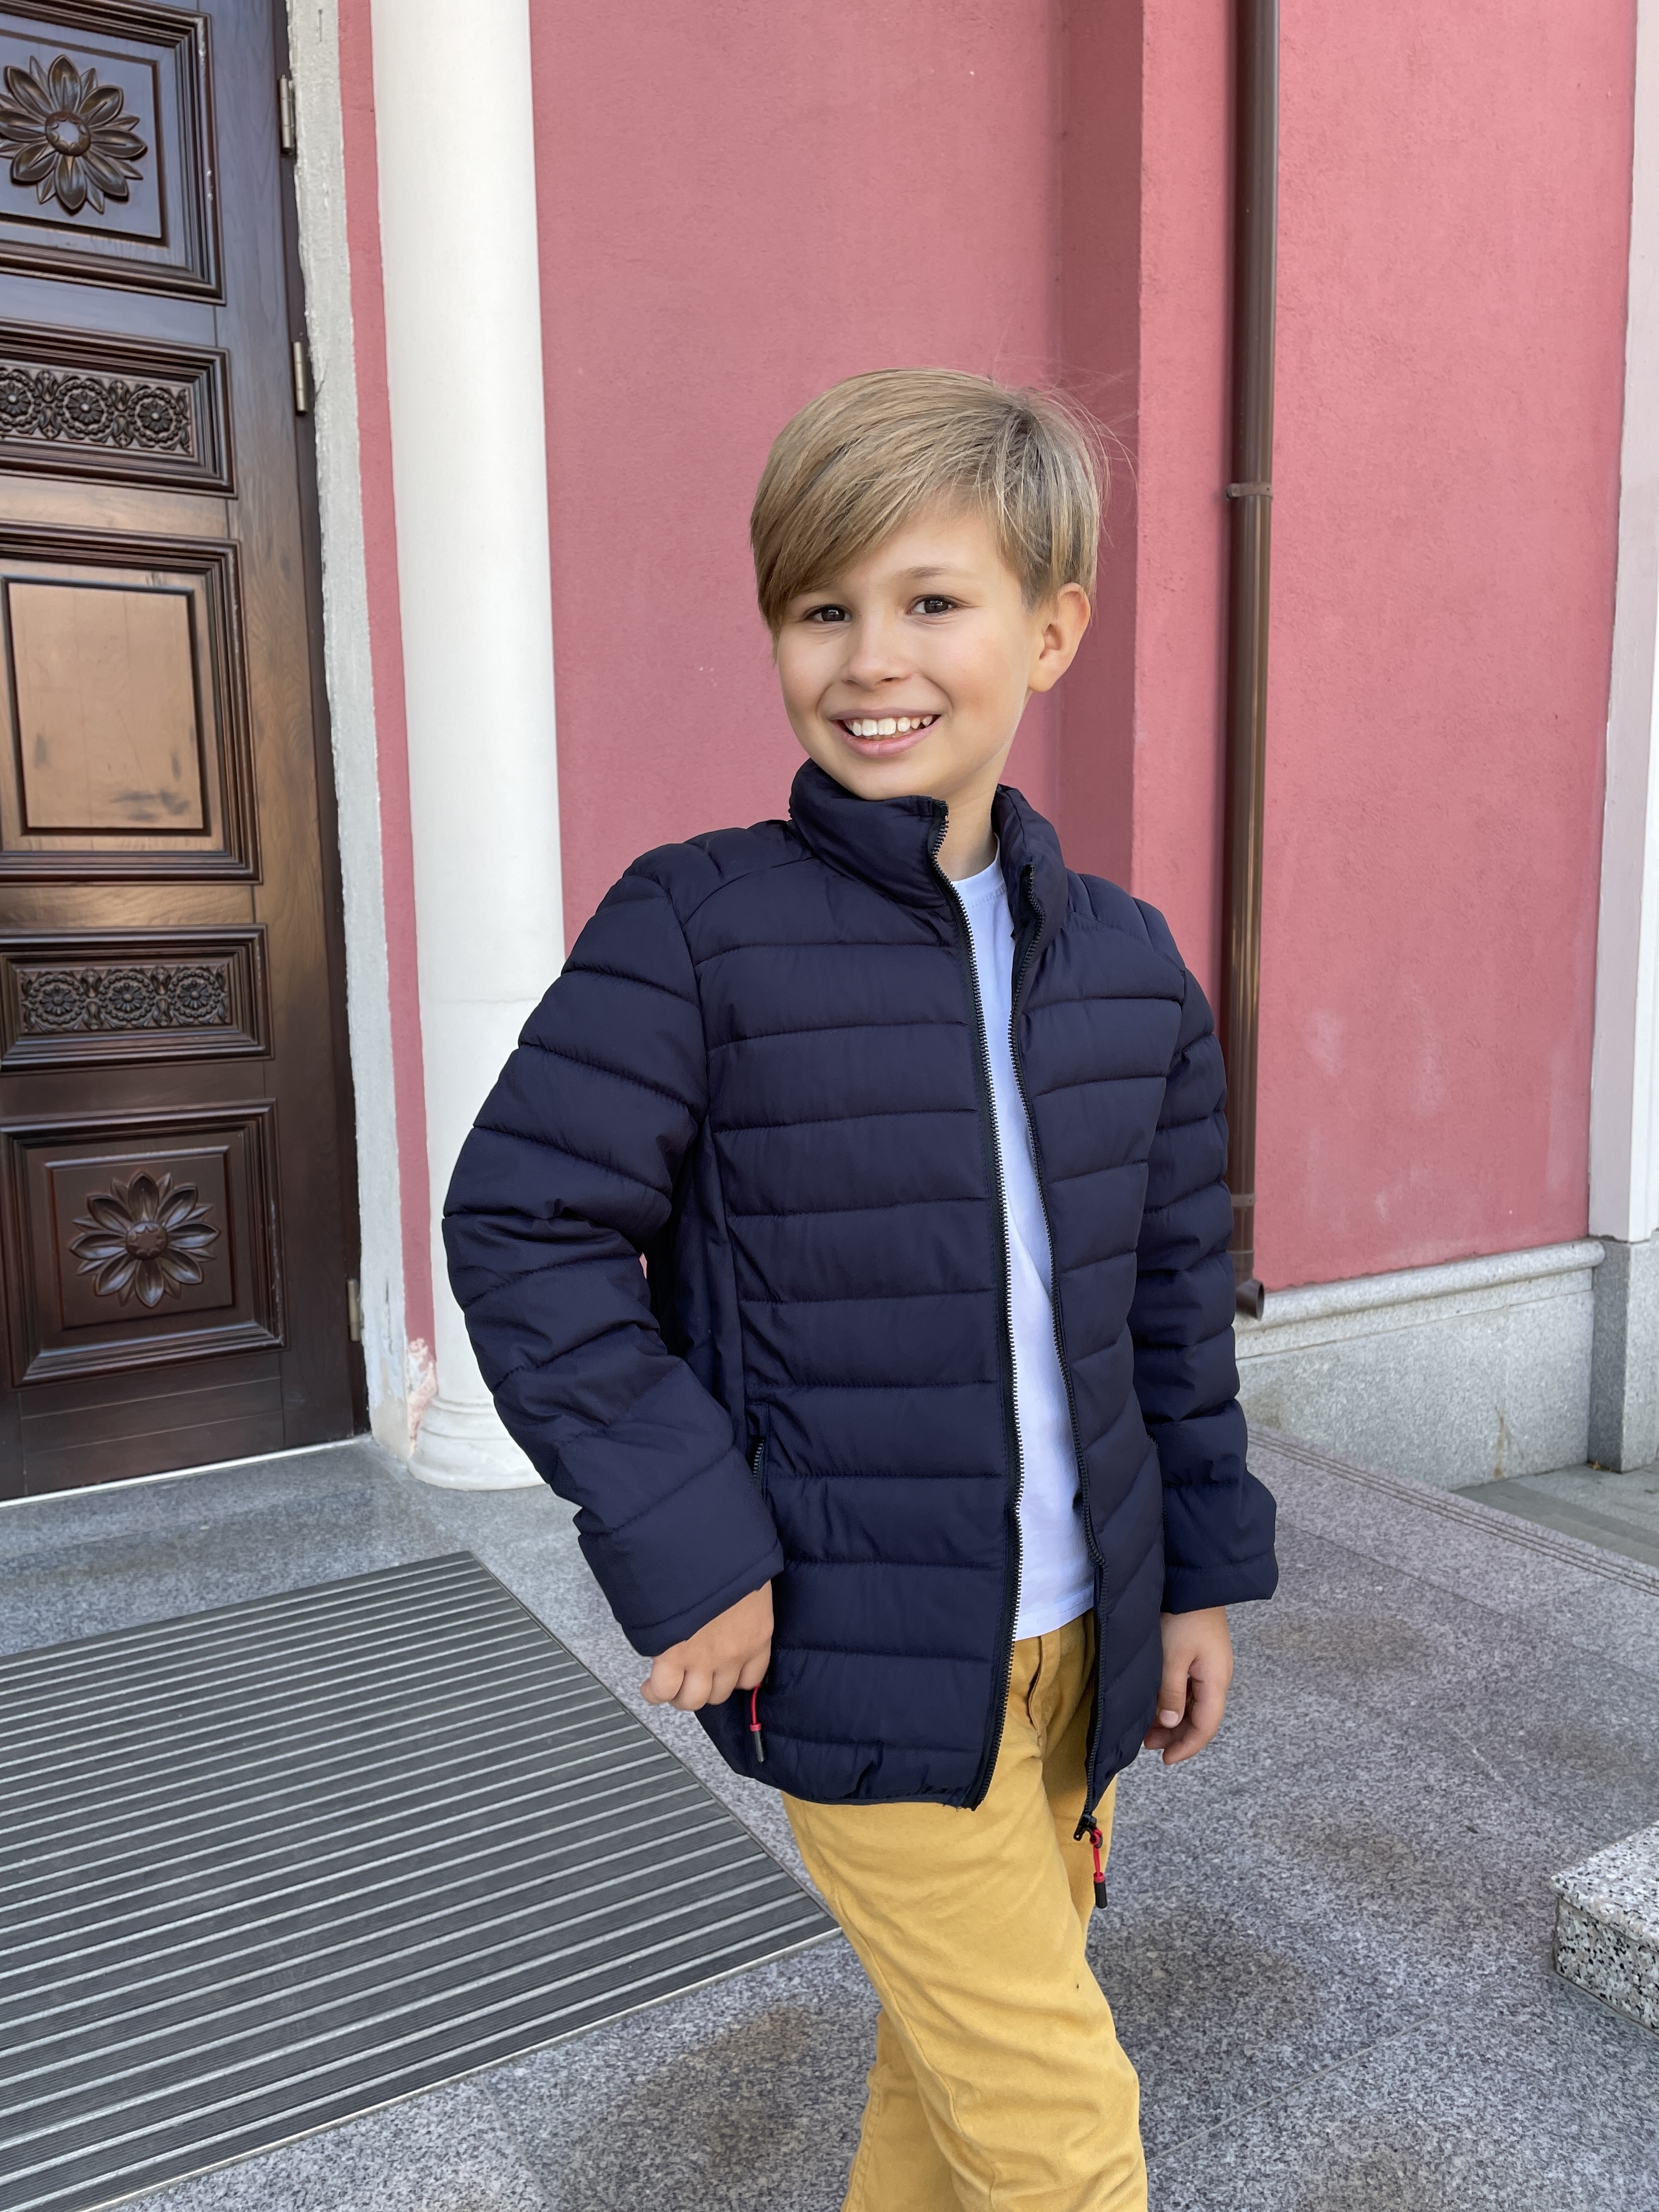 Демисезонная курточка для ребенка - купить в Украине